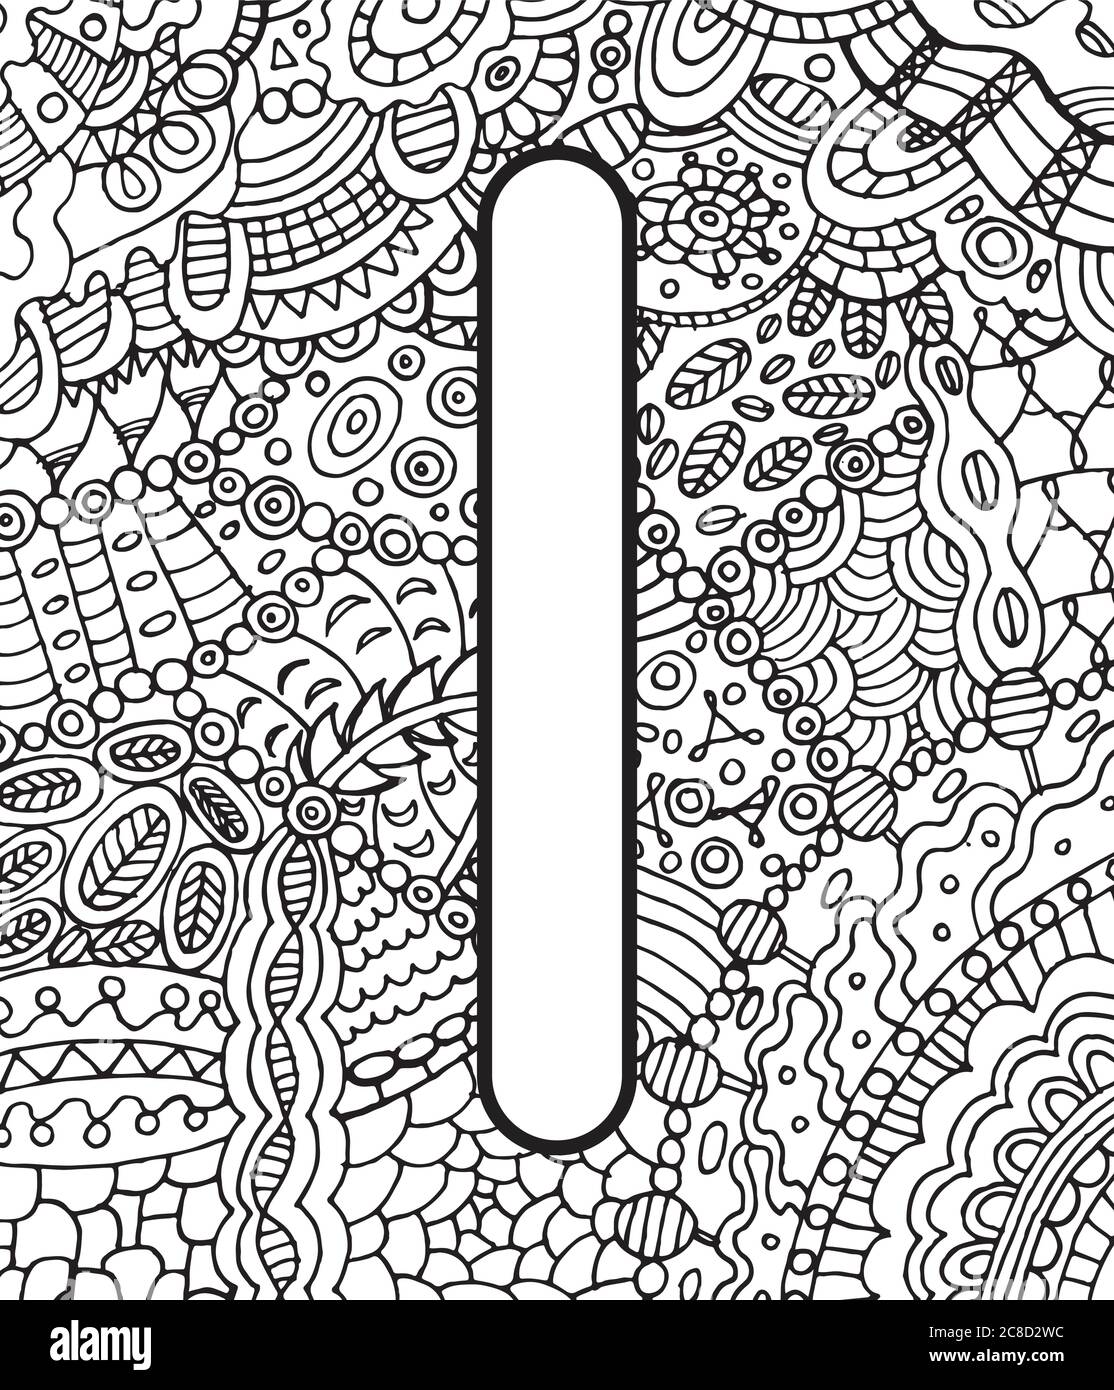 Alte skandinavische Rune Eis mit Doodle Ornament Hintergrund. Malseite für Erwachsene. Psychedelisch fantastische mystische Kunstwerke. Vektorgrafik Stock Vektor